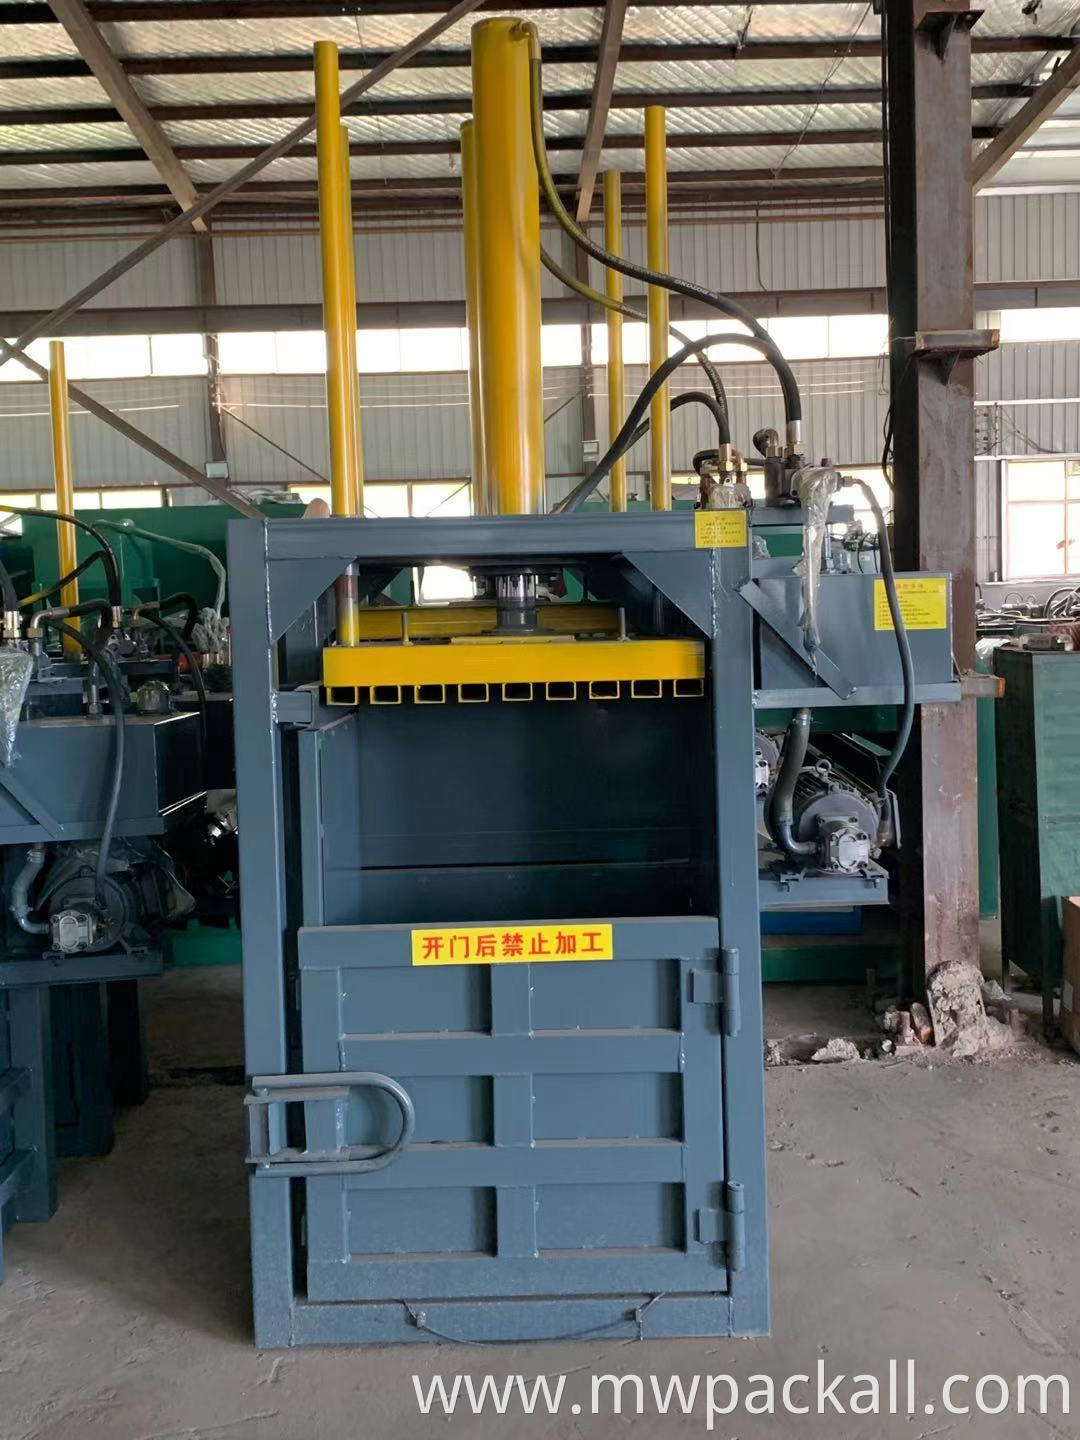 Automatic Hydraulic press packing / fiber baling machine / cotton baler machine